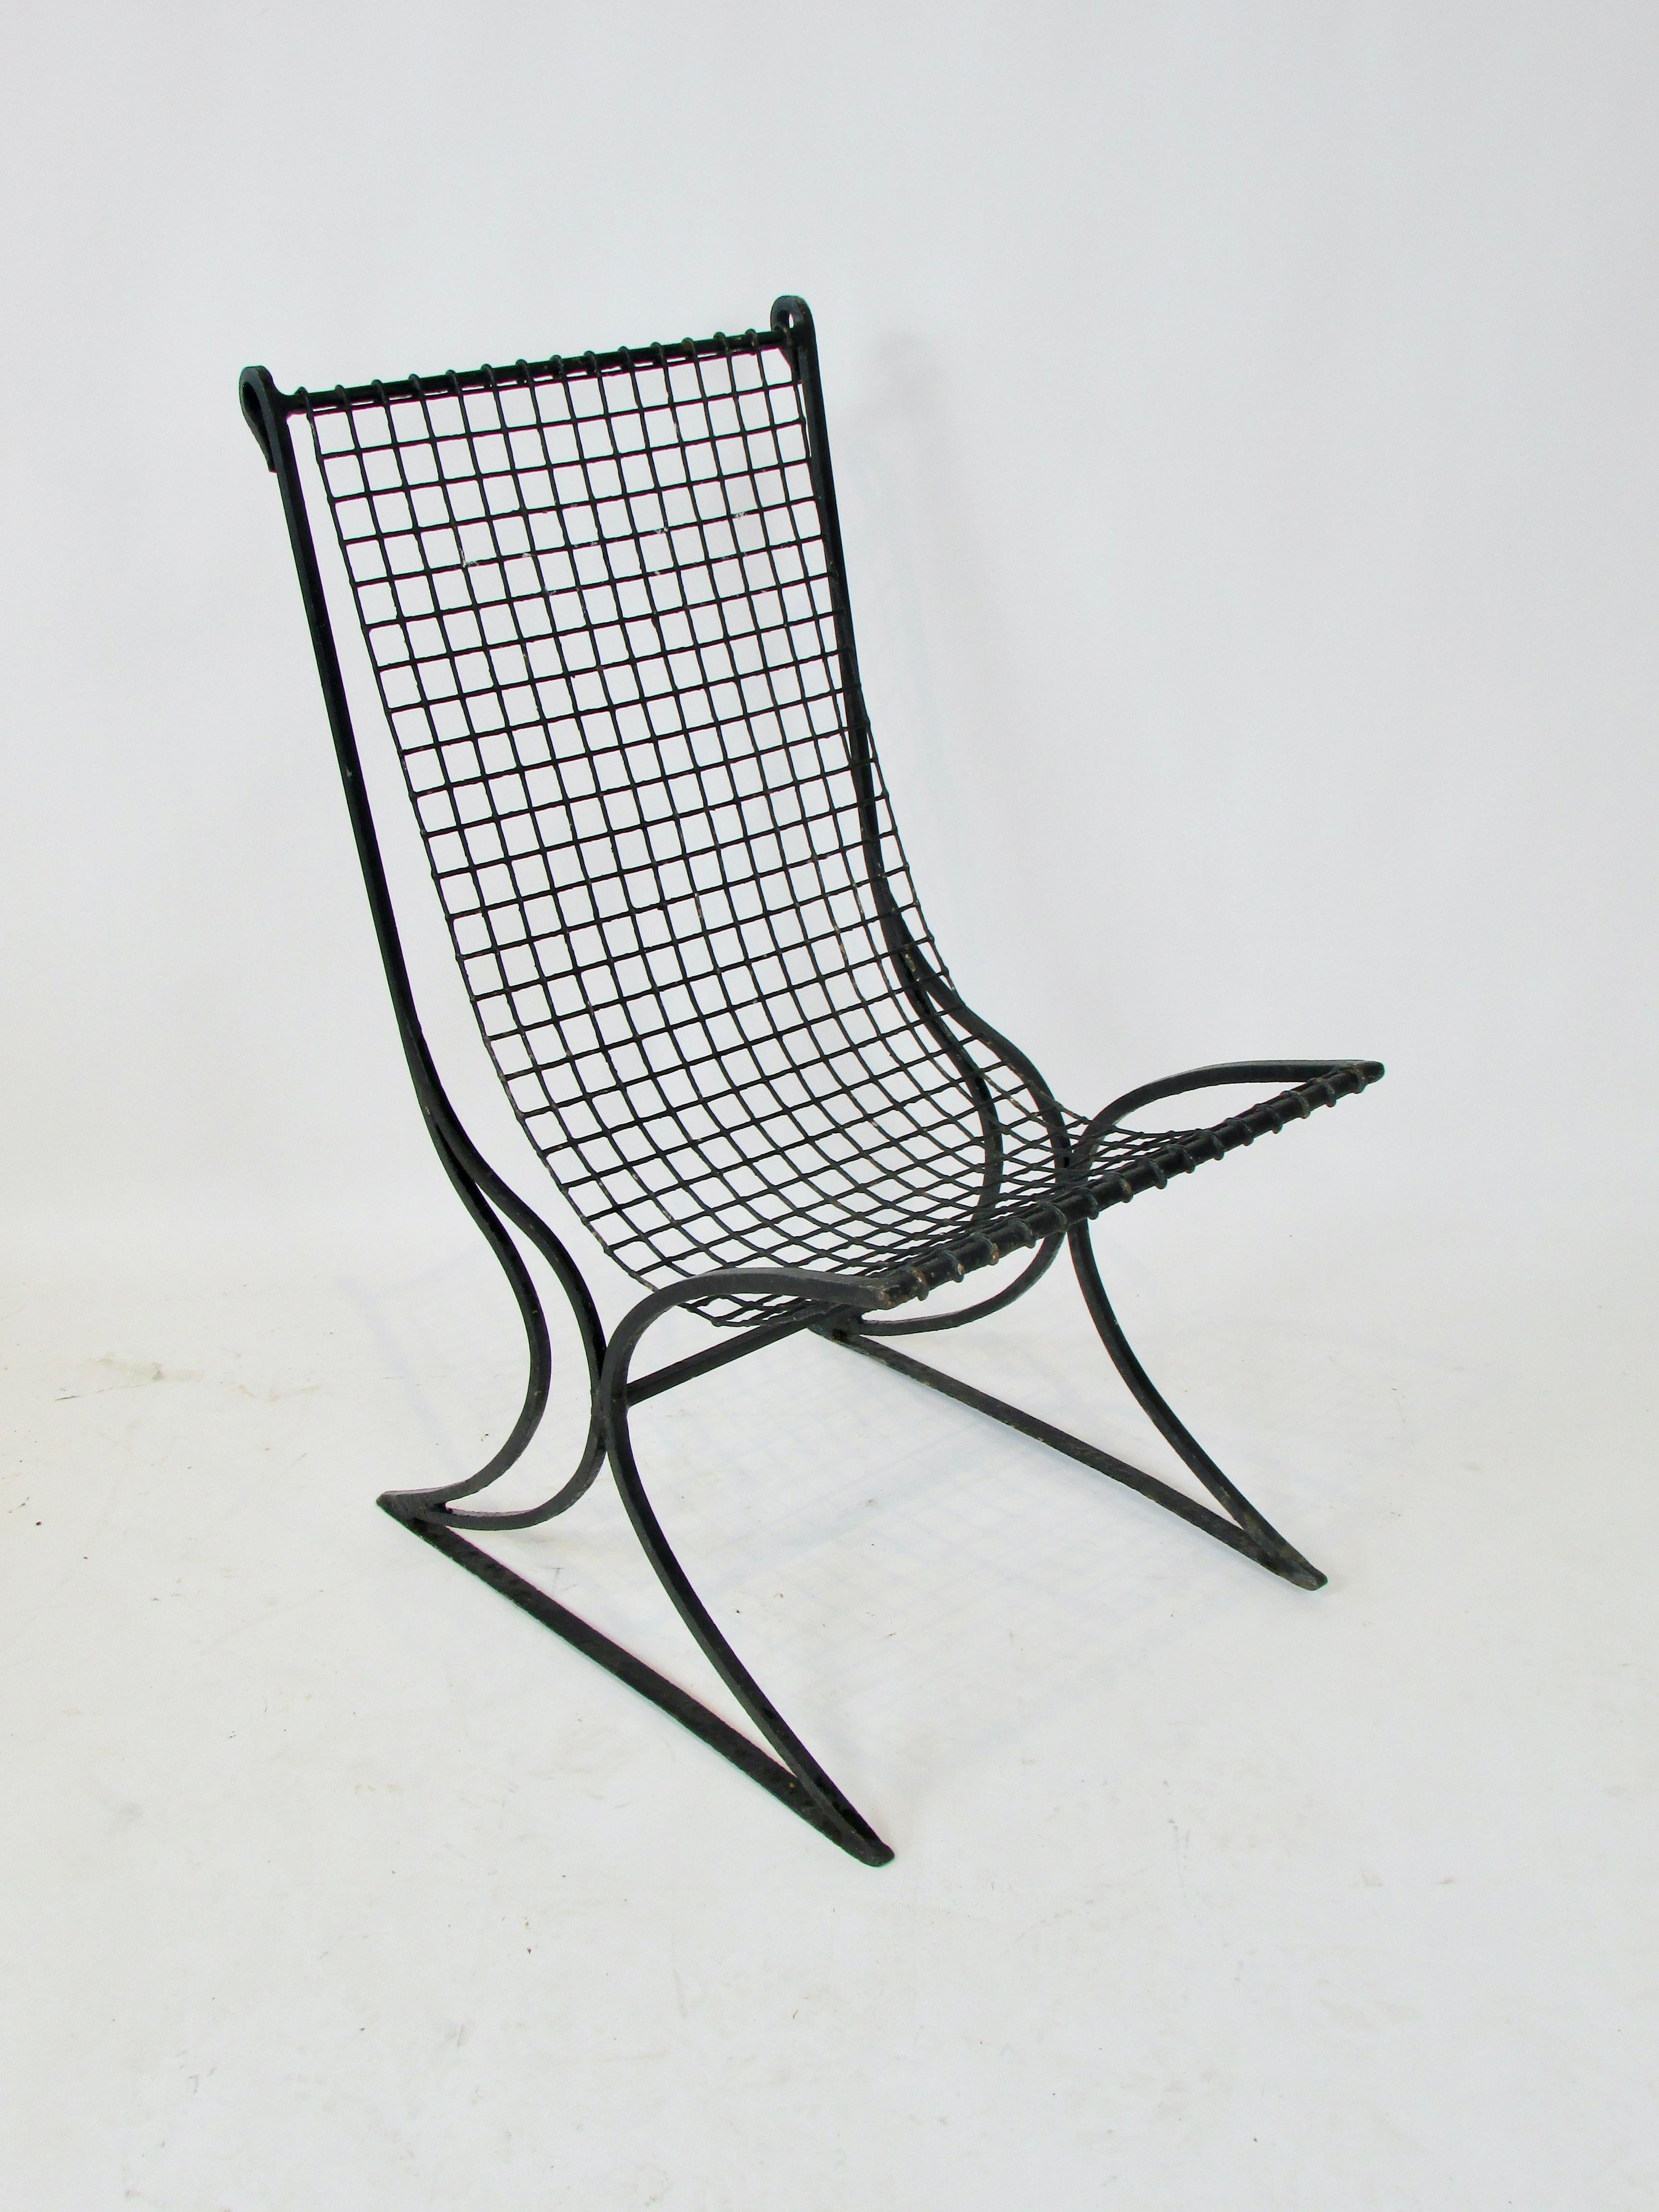 Stuhl aus dem frühen 20. Jahrhundert in schöner alter Farbe. Gekrümmter schmiedeeiserner Rahmen aus Vierkantmaterial mit geschwungenen  Die Enden an der Oberseite der Rückenlehne halten den quadratischen Gitterdrahtsitz.